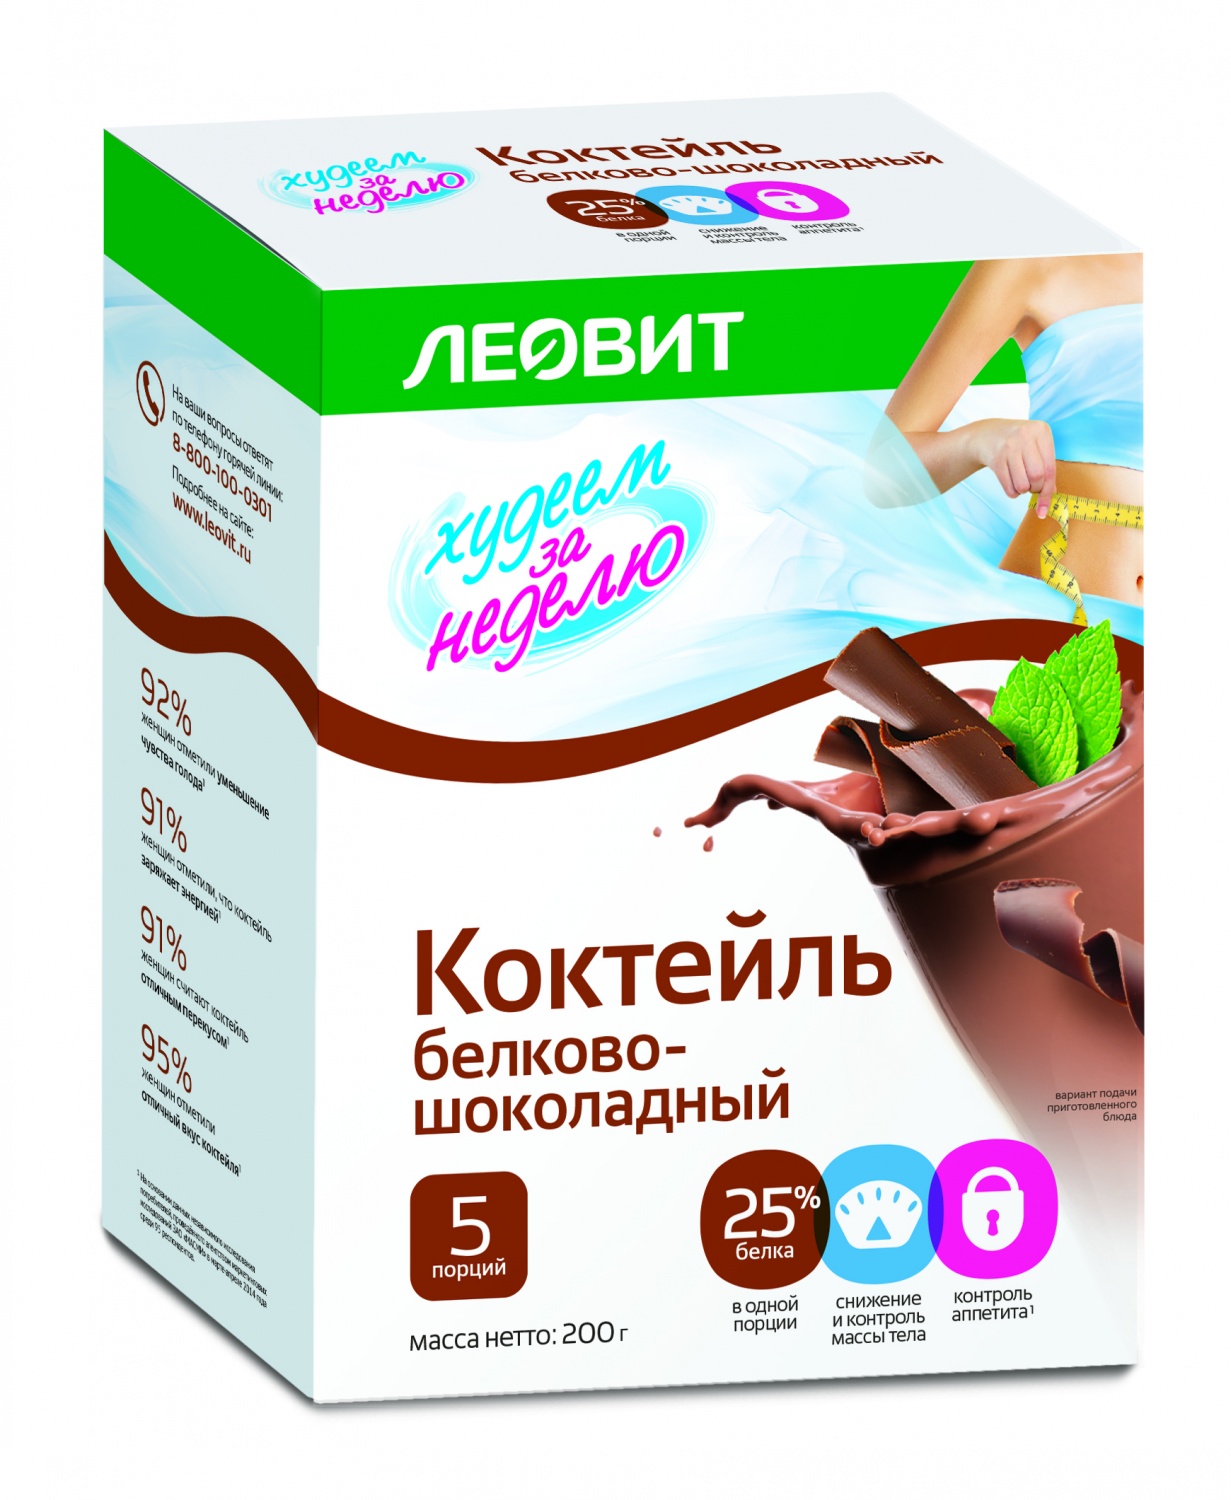 Леовит Коктейль белково - шоколадный 